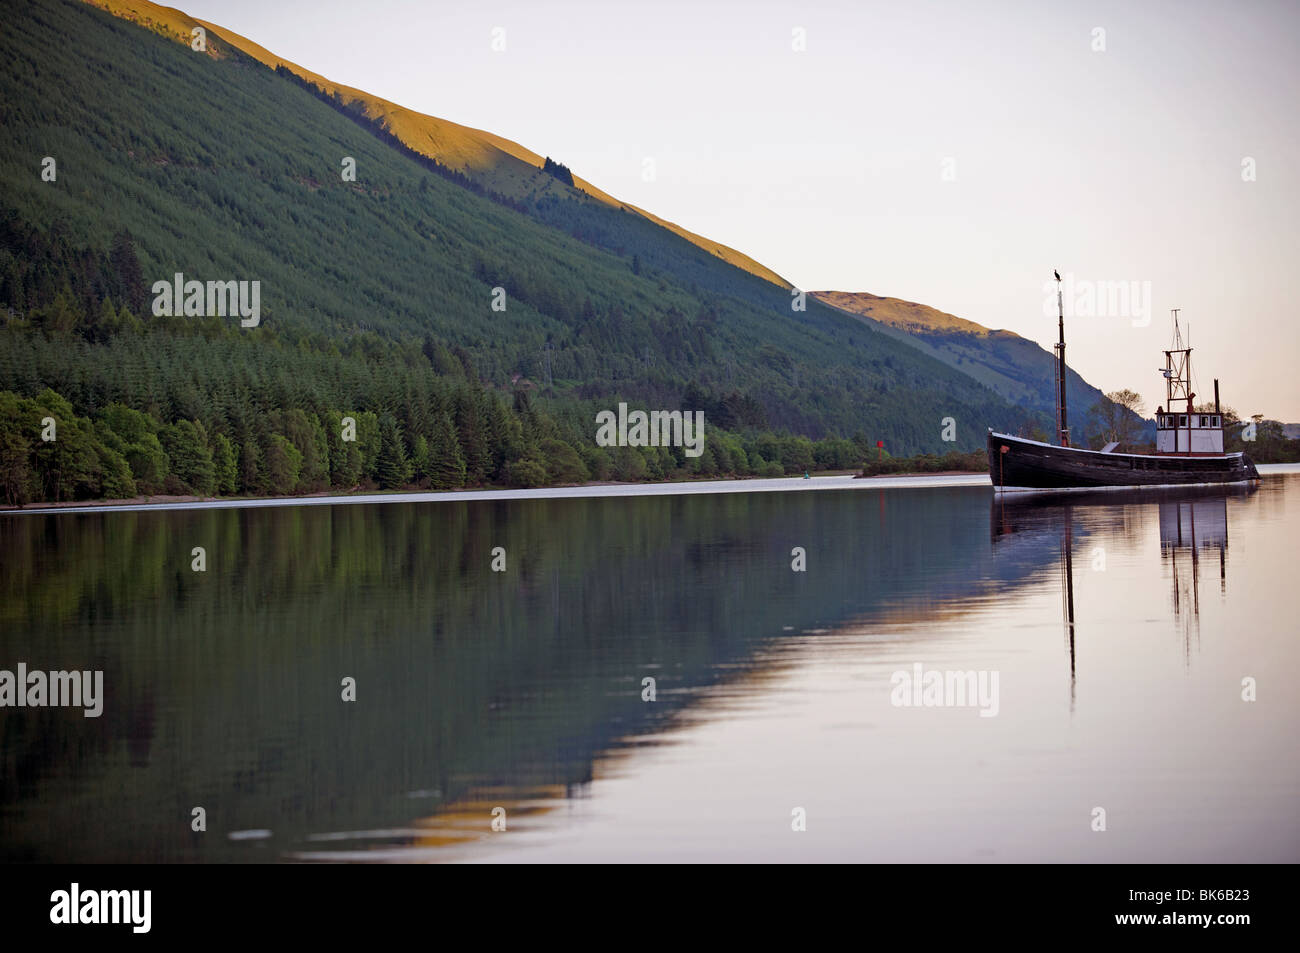 Loch, Scottish Highland, UK. Stock Photo